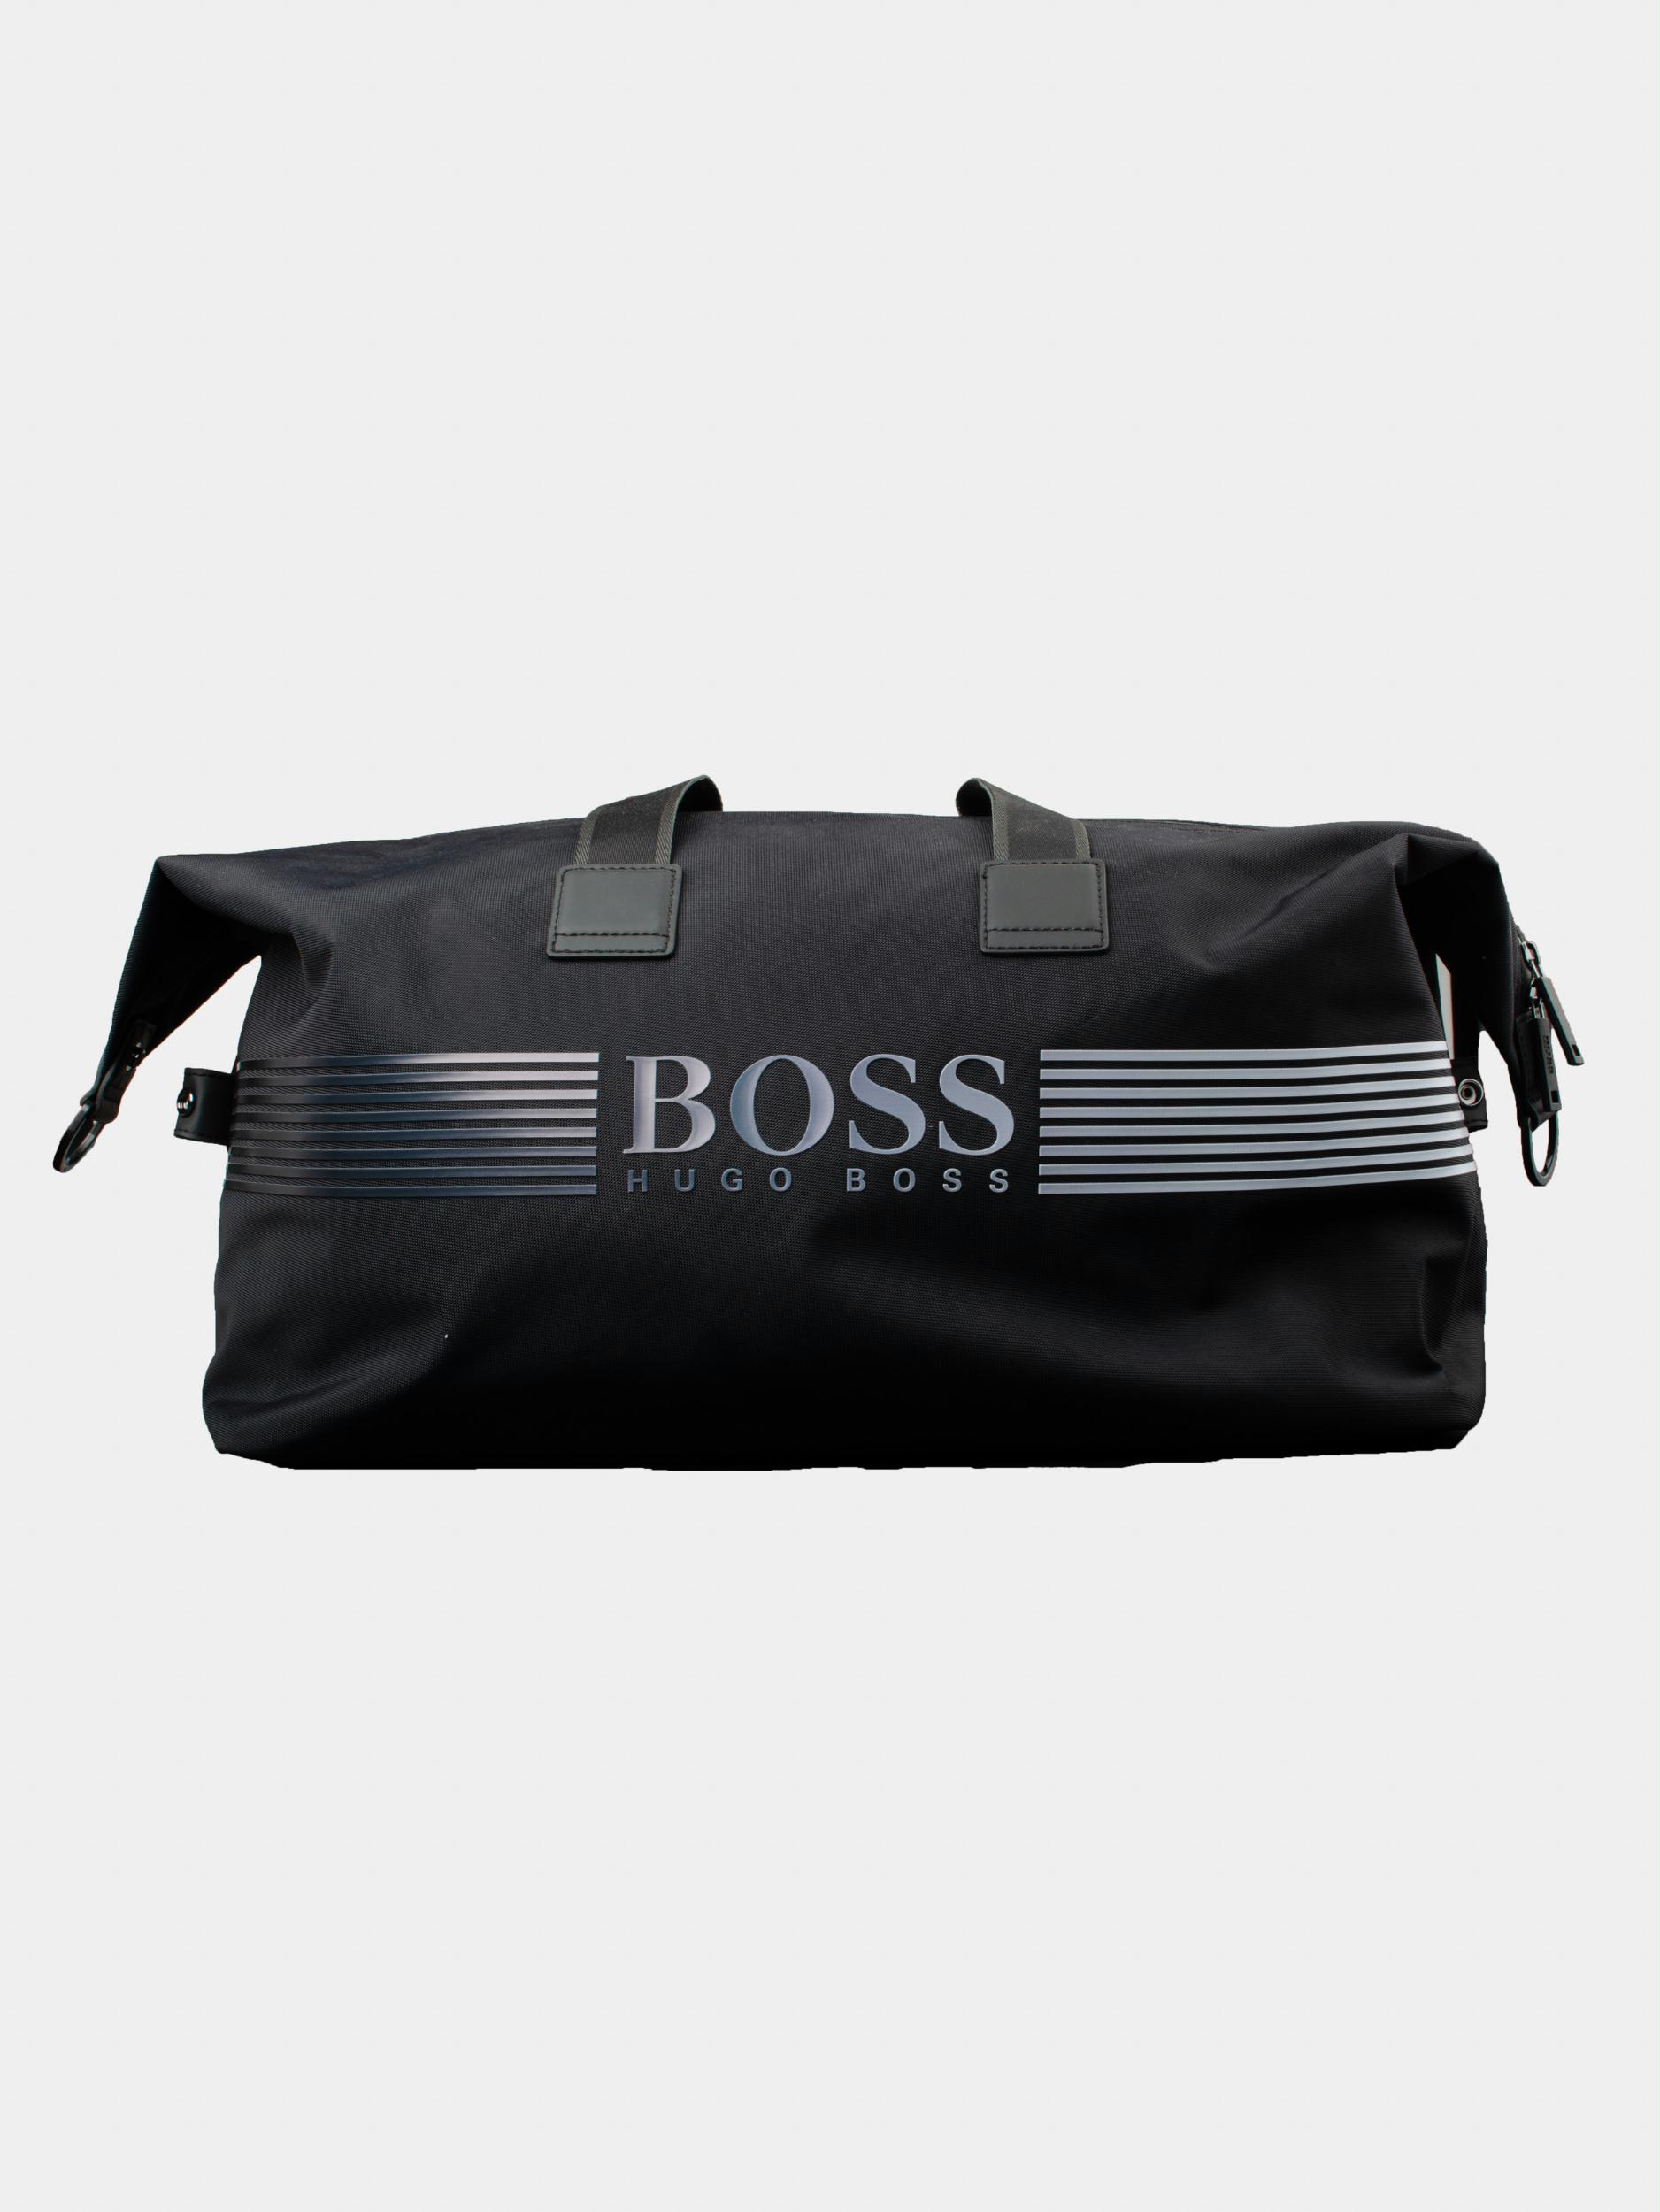 Datum vaak Discriminerend Hugo Boss Tassen | Online Kopen | Bos Men Shop